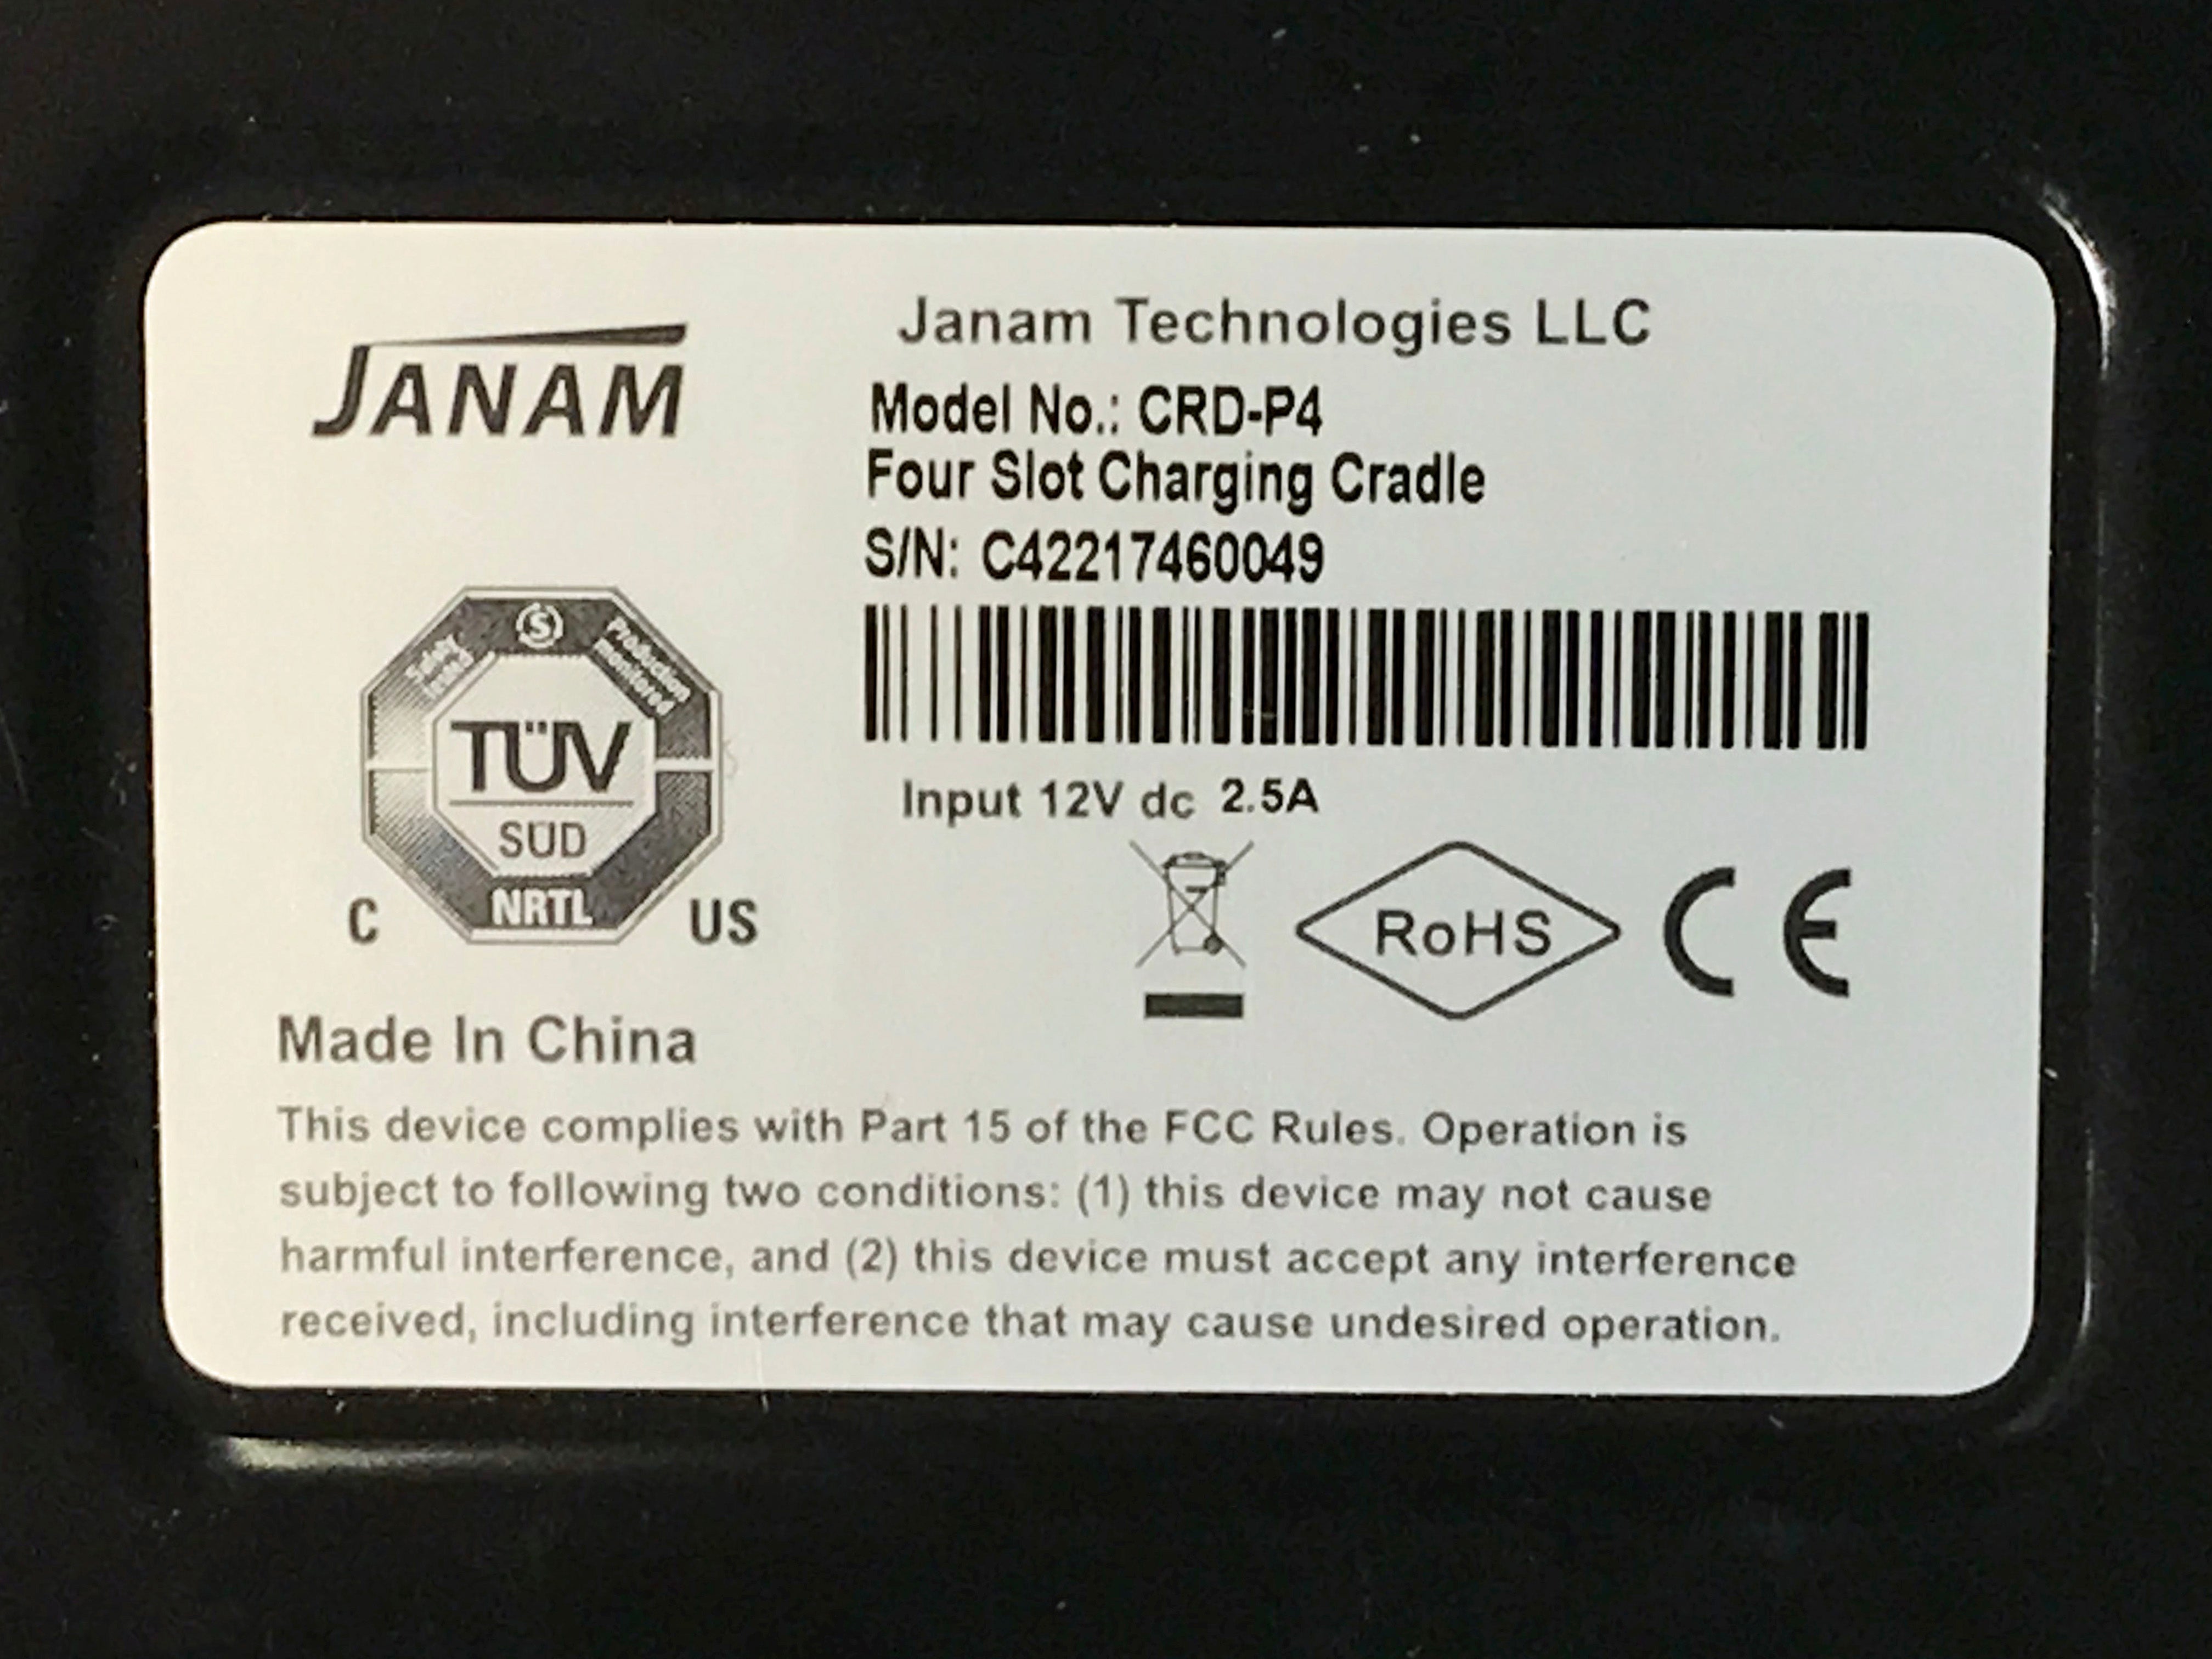 Janam Technologies CKT-T4-003C 4 Slot Charging Cradle Kit